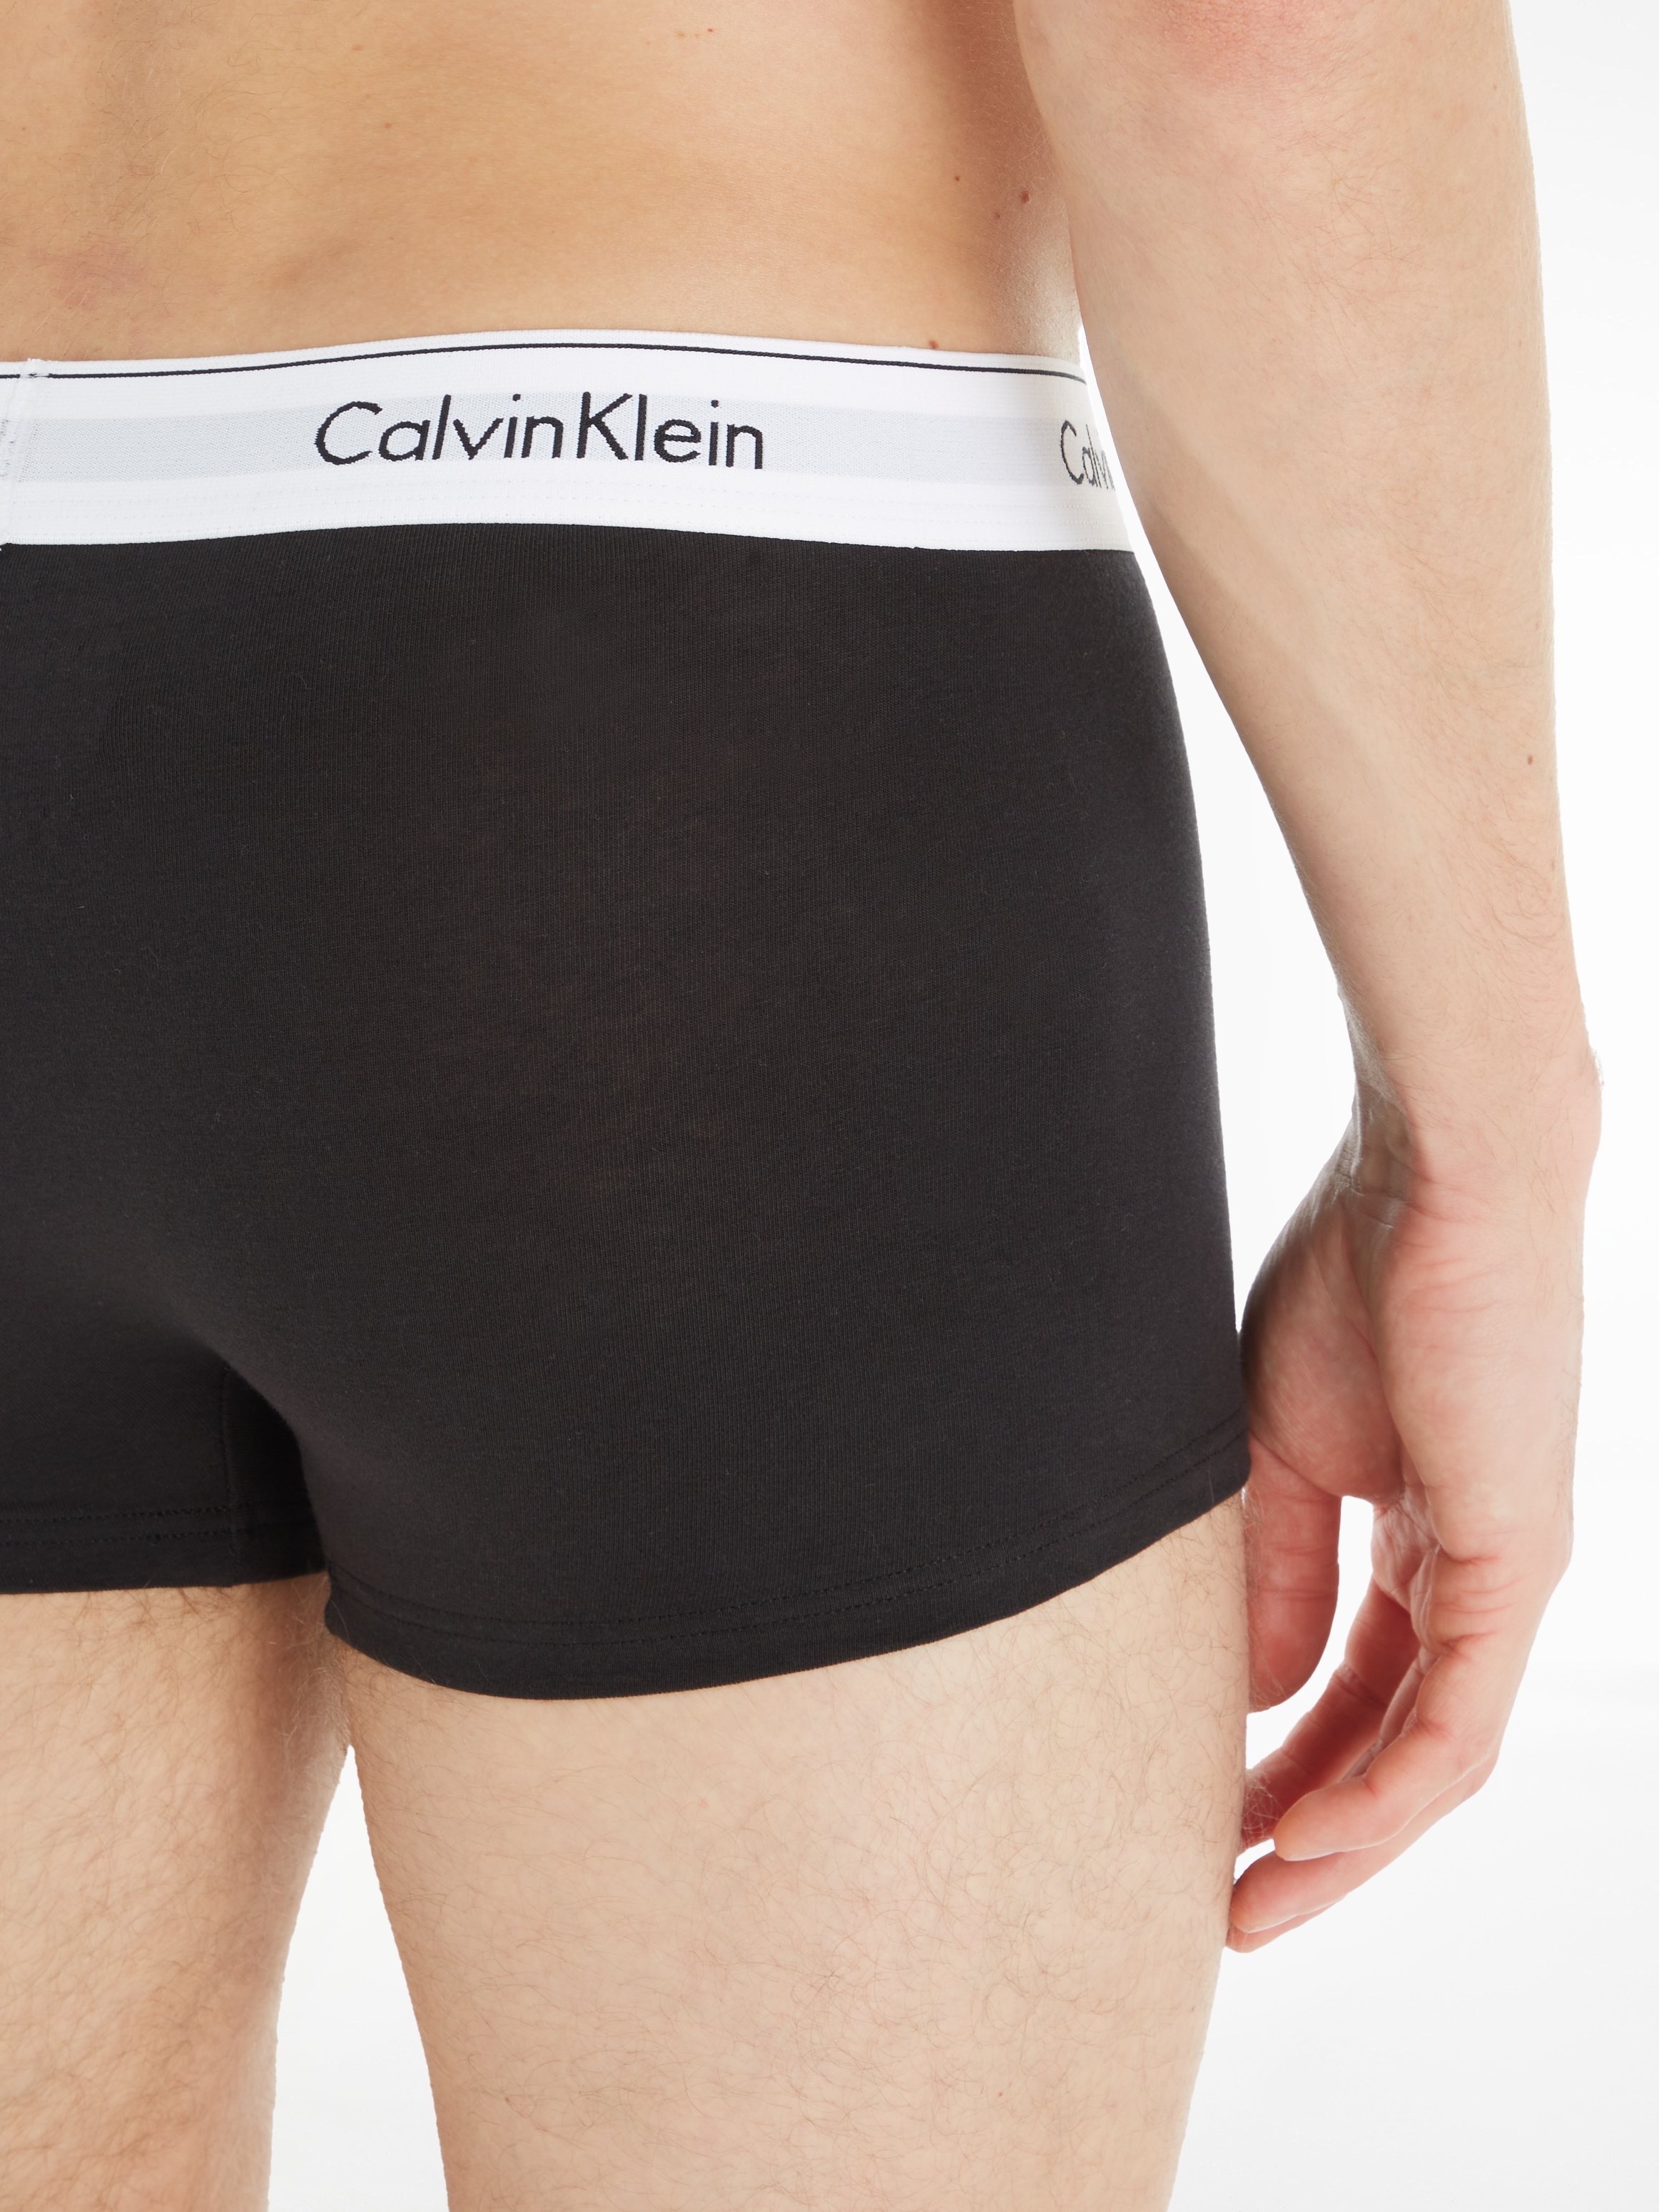 Calvin Klein Underwear Trunk, (Packung, 3 St., 3er-Pack), mit Logoschriftzug am Wäschebund